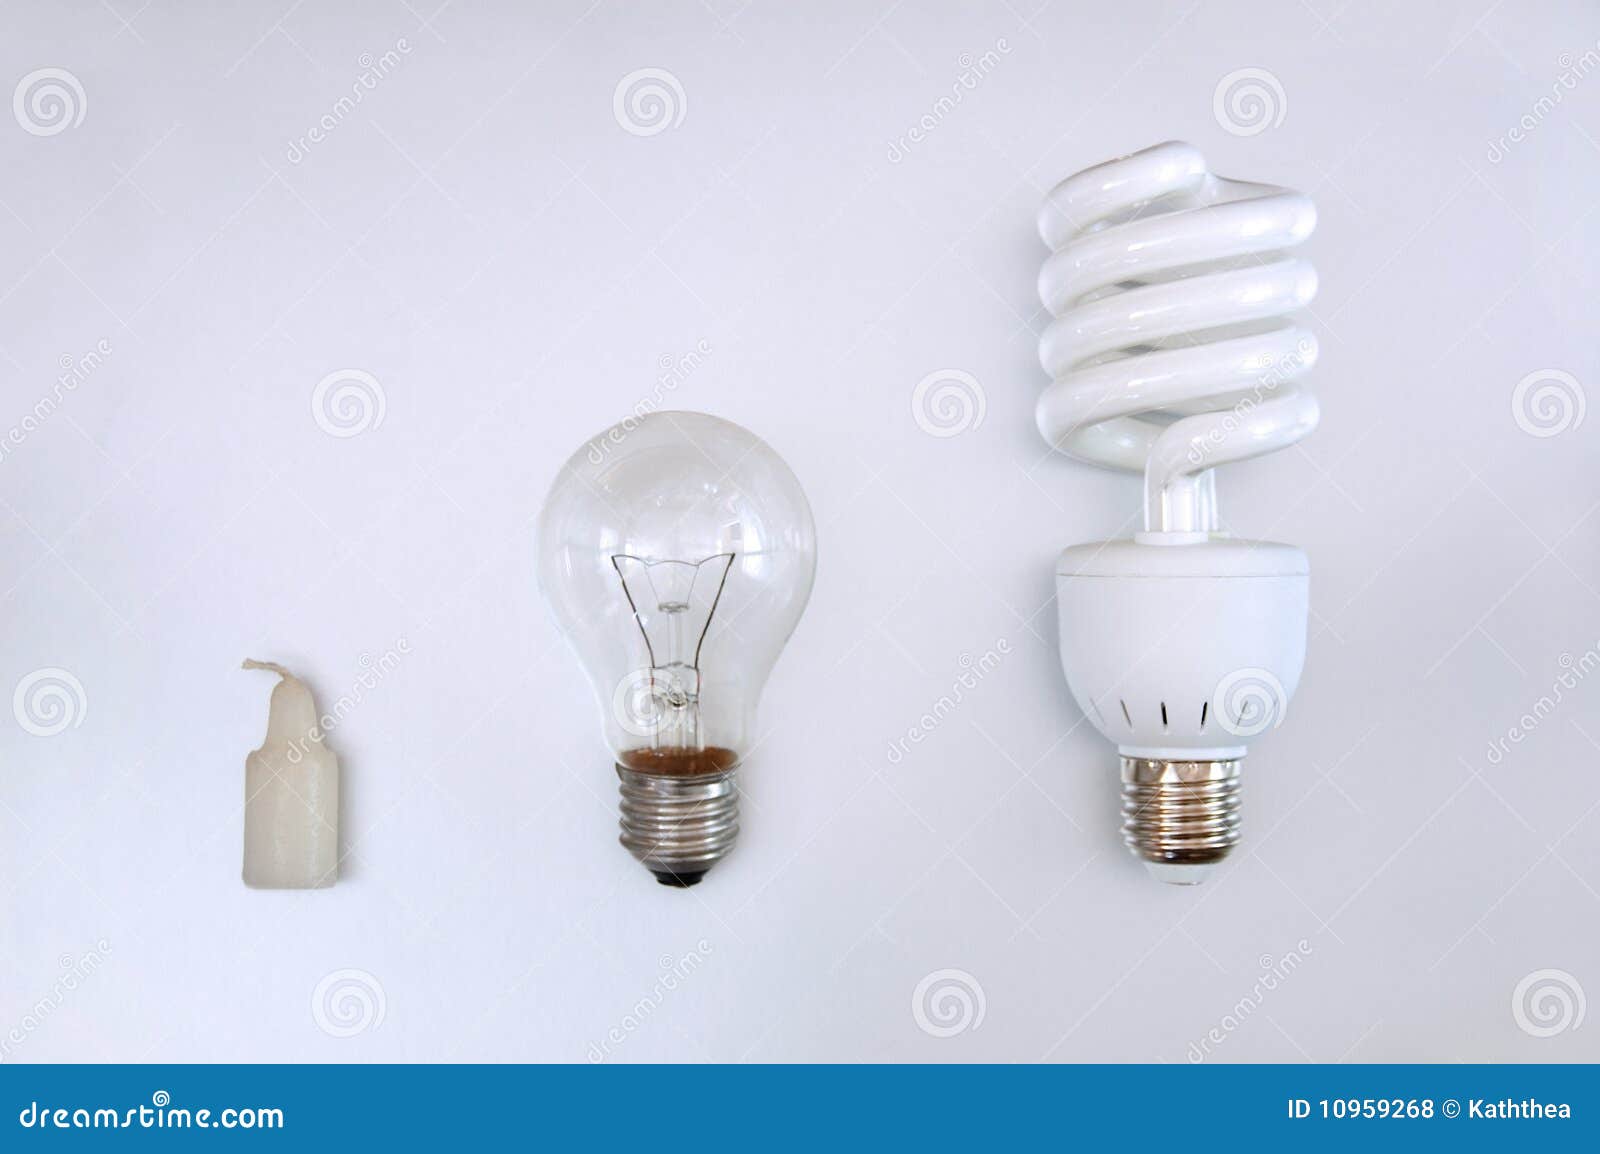 evolution of illumination